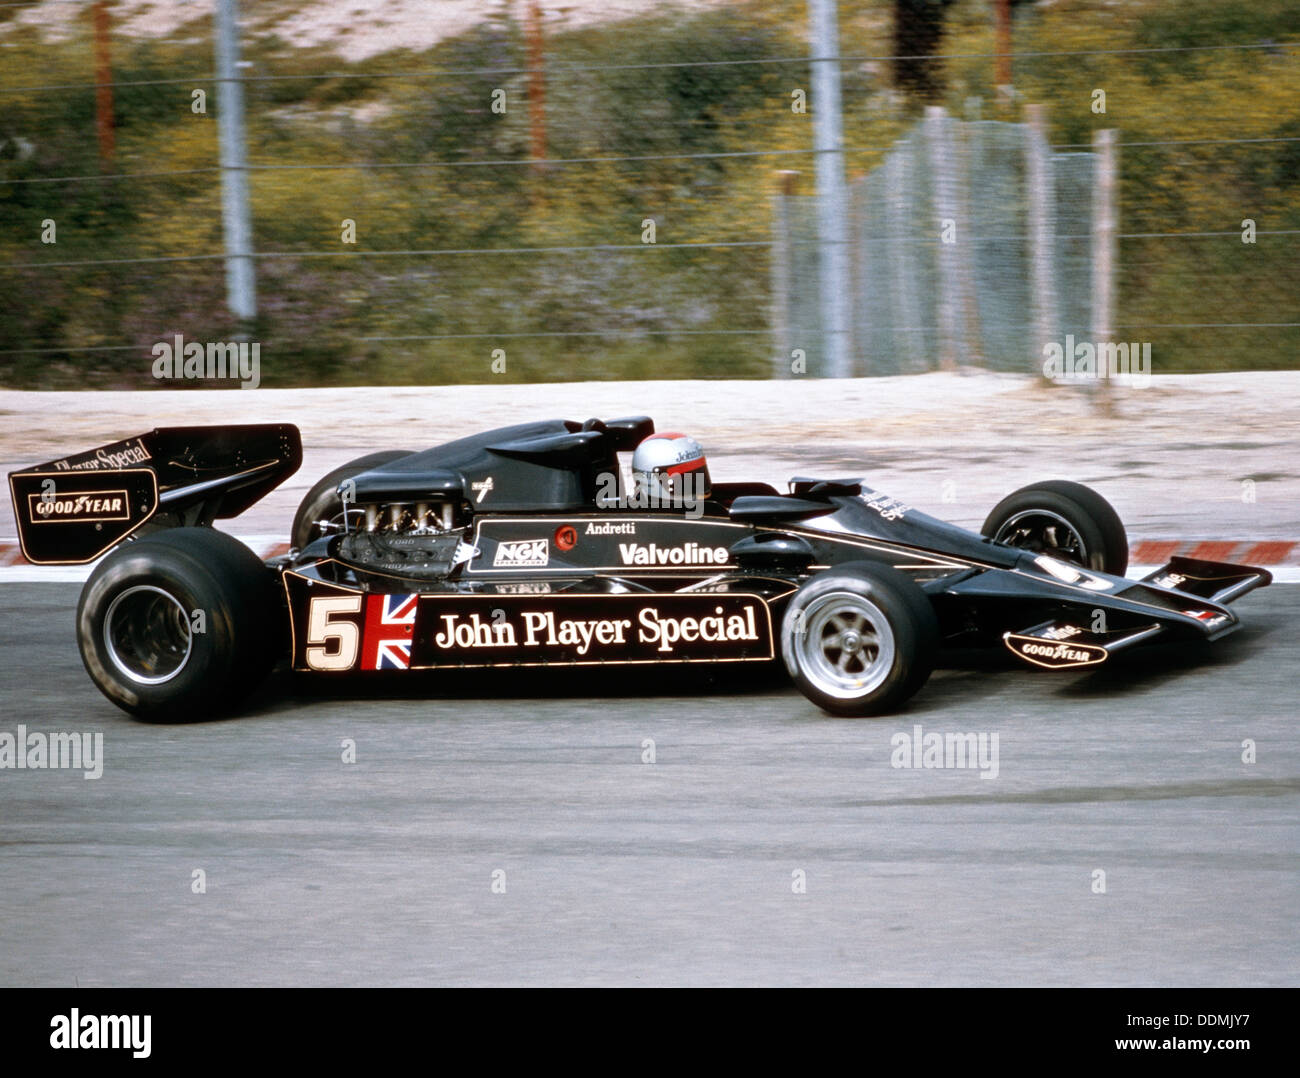 Mario Andretti racing ein Jps Lotus-Cosworth 78, Grand Prix von Spanien, Jarama, Spanien, 1977. Artist: Unbekannt Stockfoto